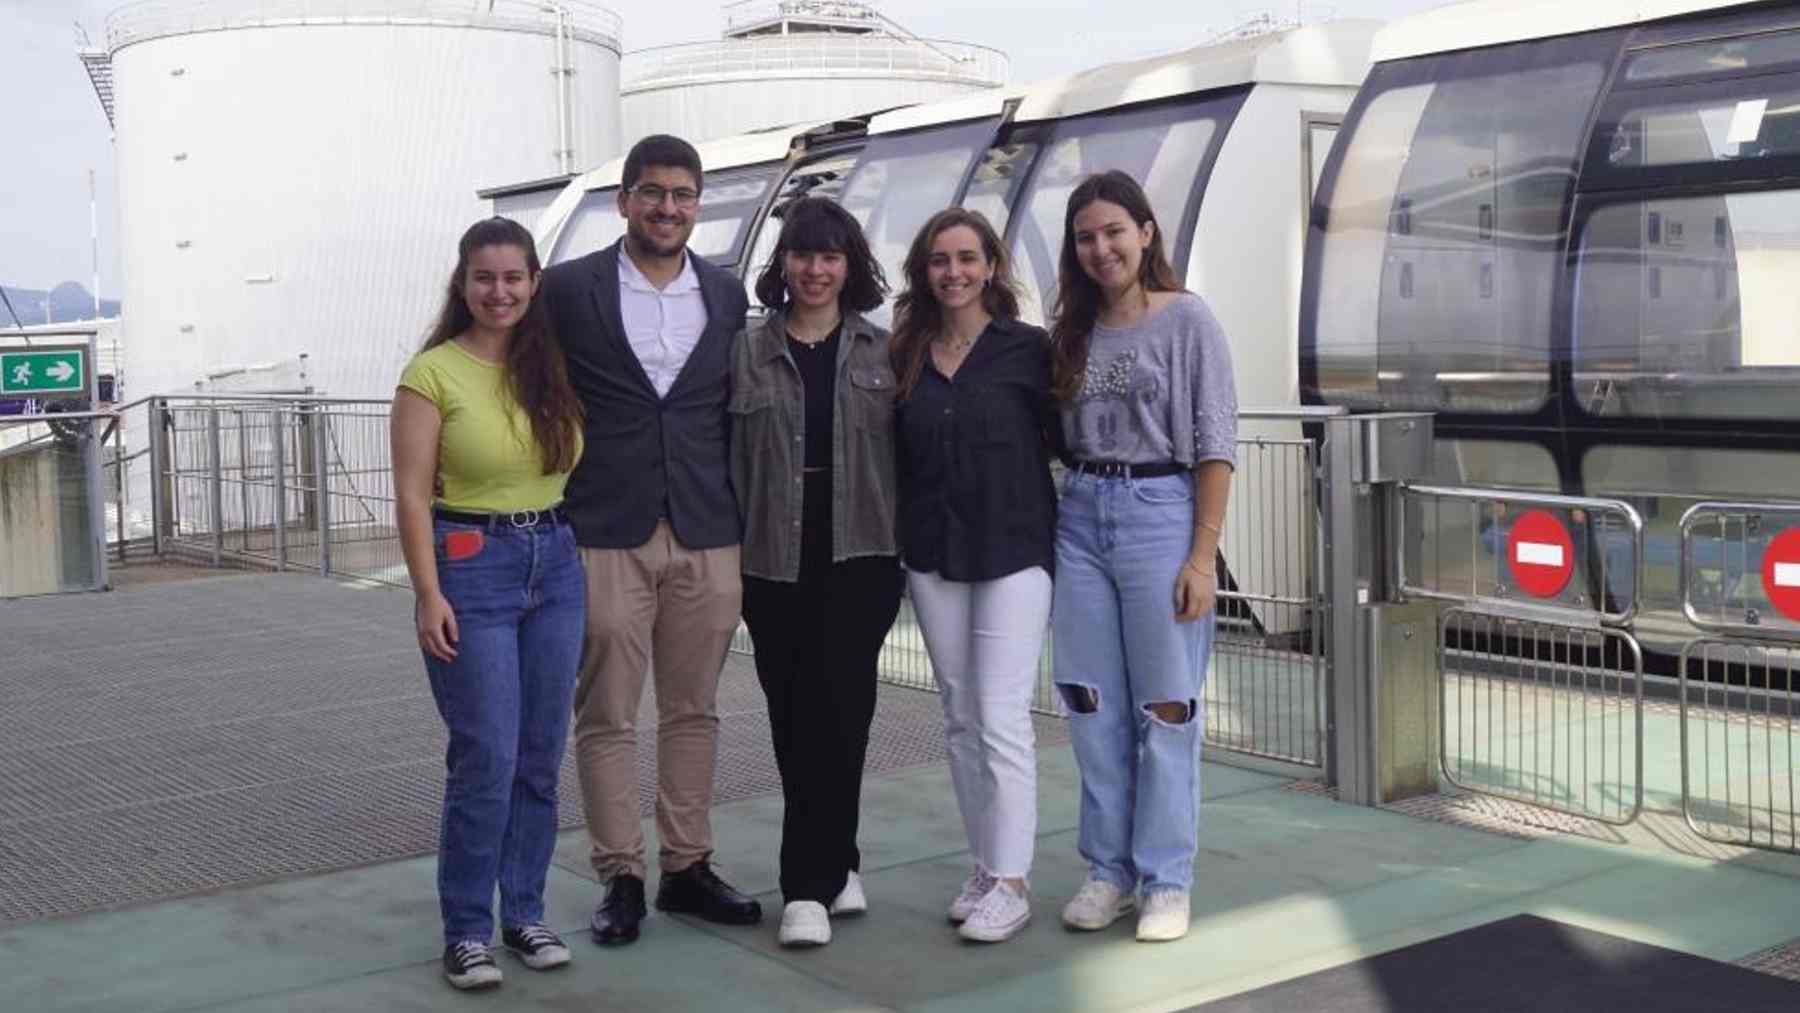 Los alumnos de la UIB ganadores del concurso: Inès Capilla, Mario Valverde, Maria Binimelis, Neus Munar y Francisca Tomàs.